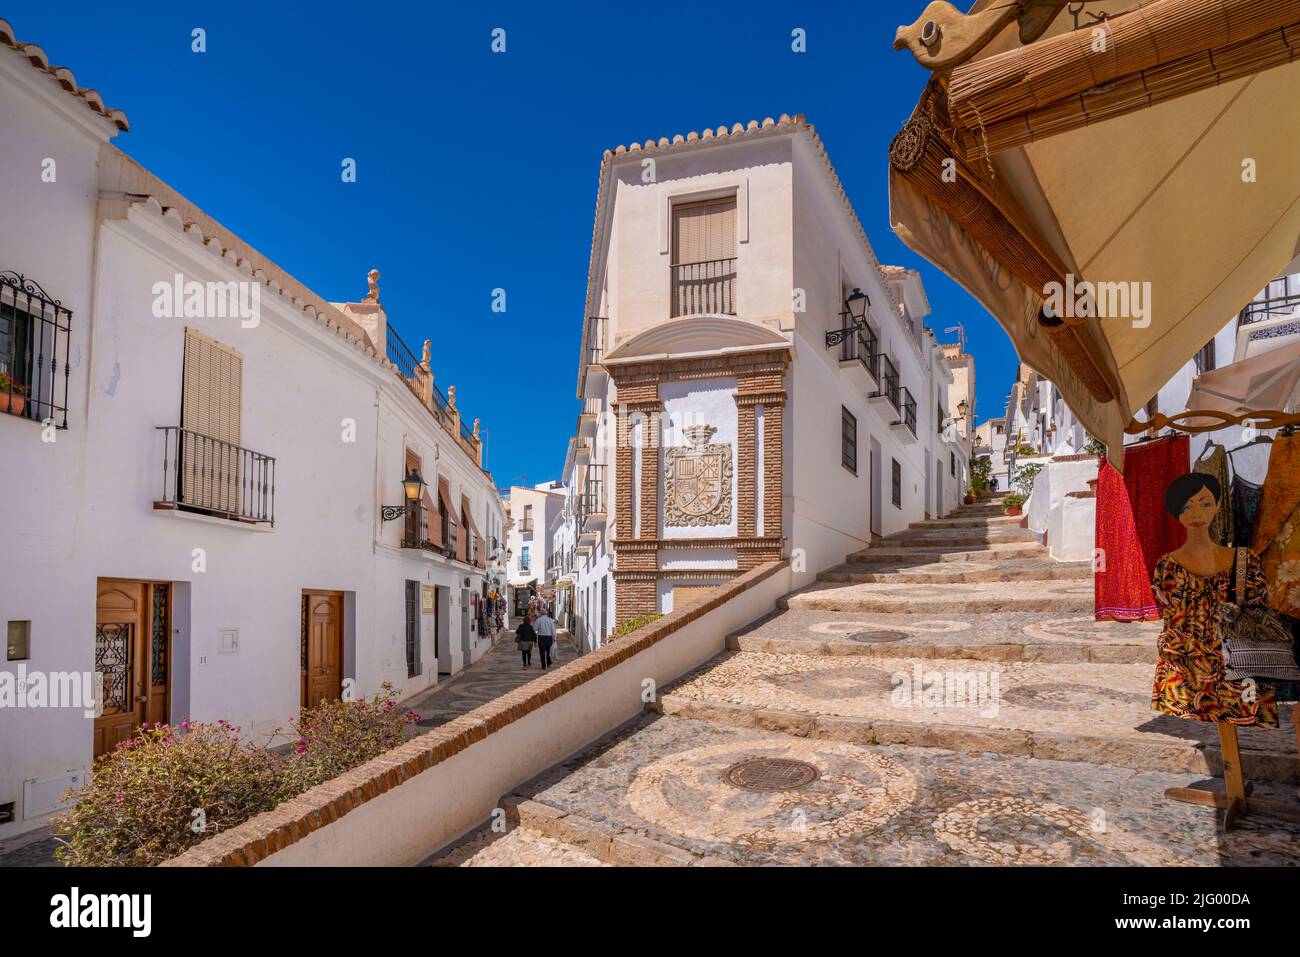 Vista de casas encaladas y tienda de ropa en calle estrecha, Frigiliana, provincia de Málaga, Andalucía, España, Mediterráneo, Europa Foto de stock